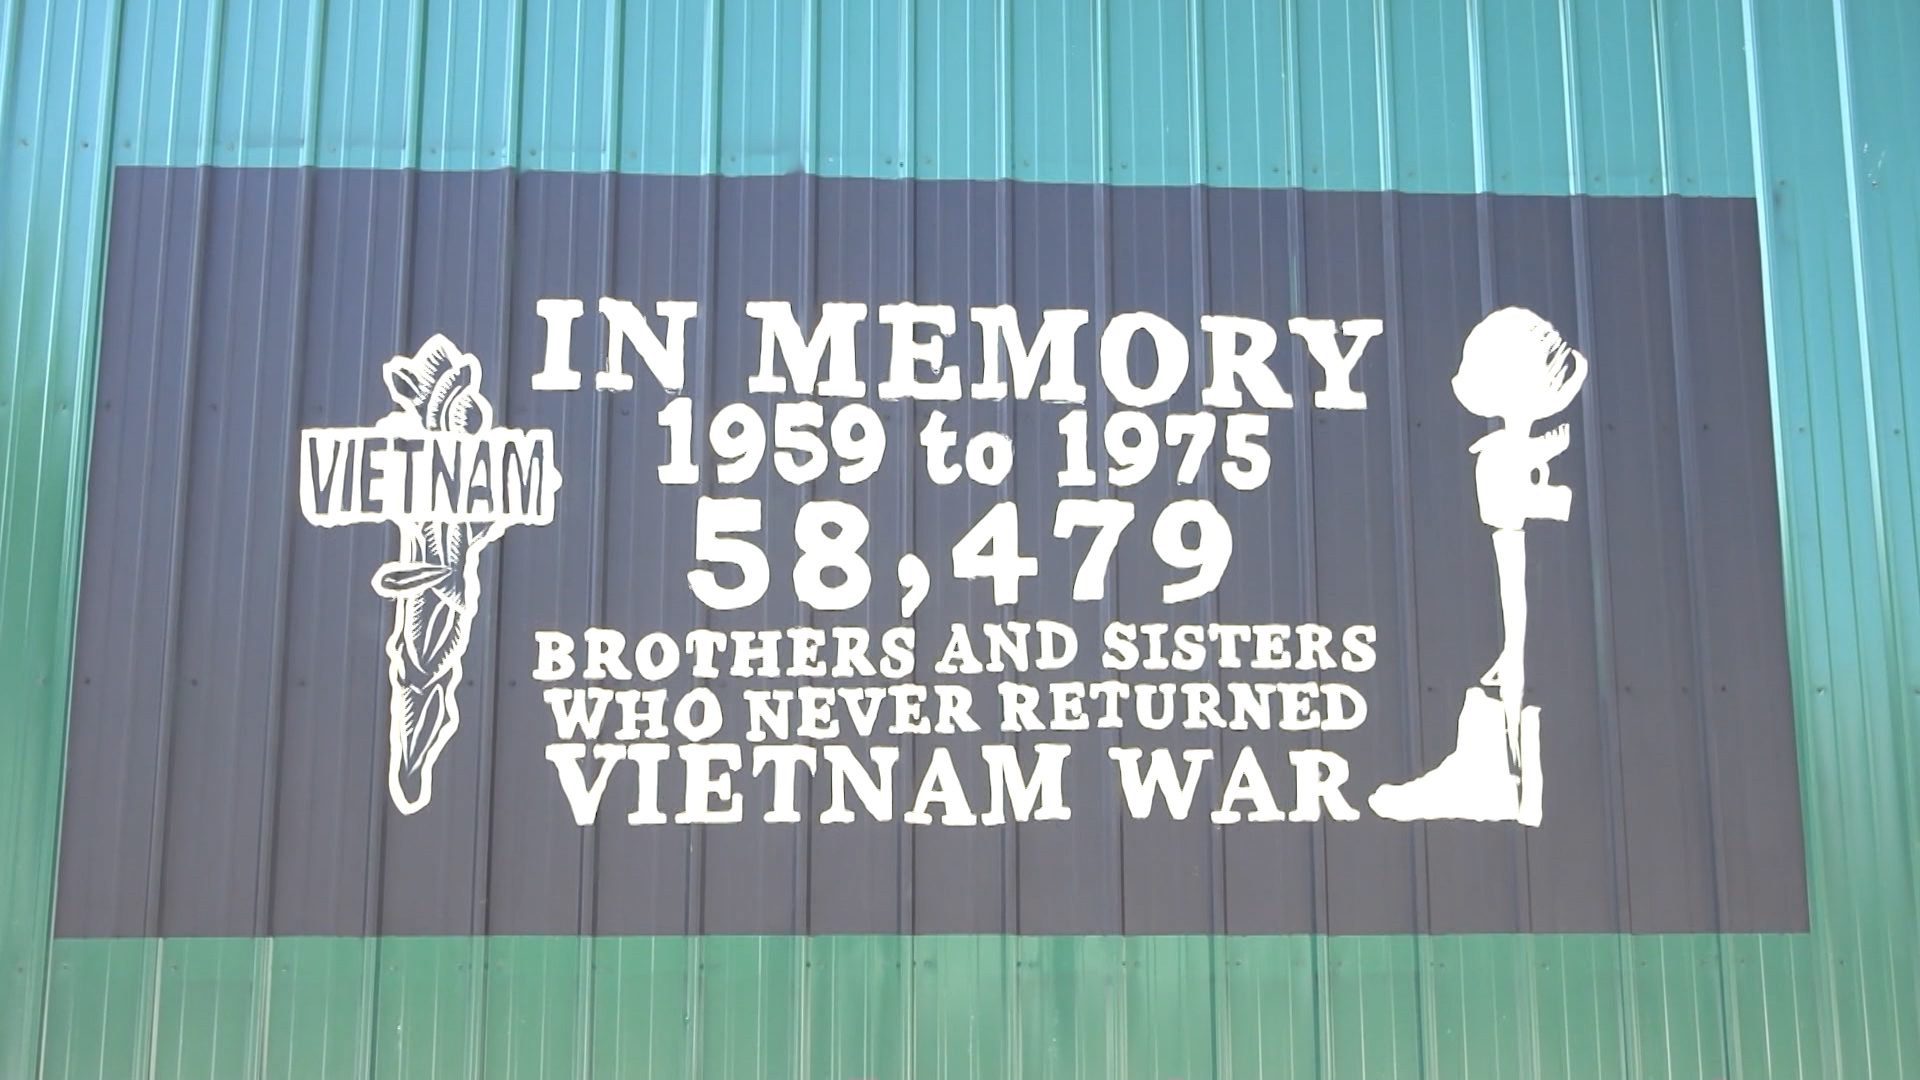 Vietnam Veteran Dedicated Murals To Veterans For Memorial Day – WBKB 11